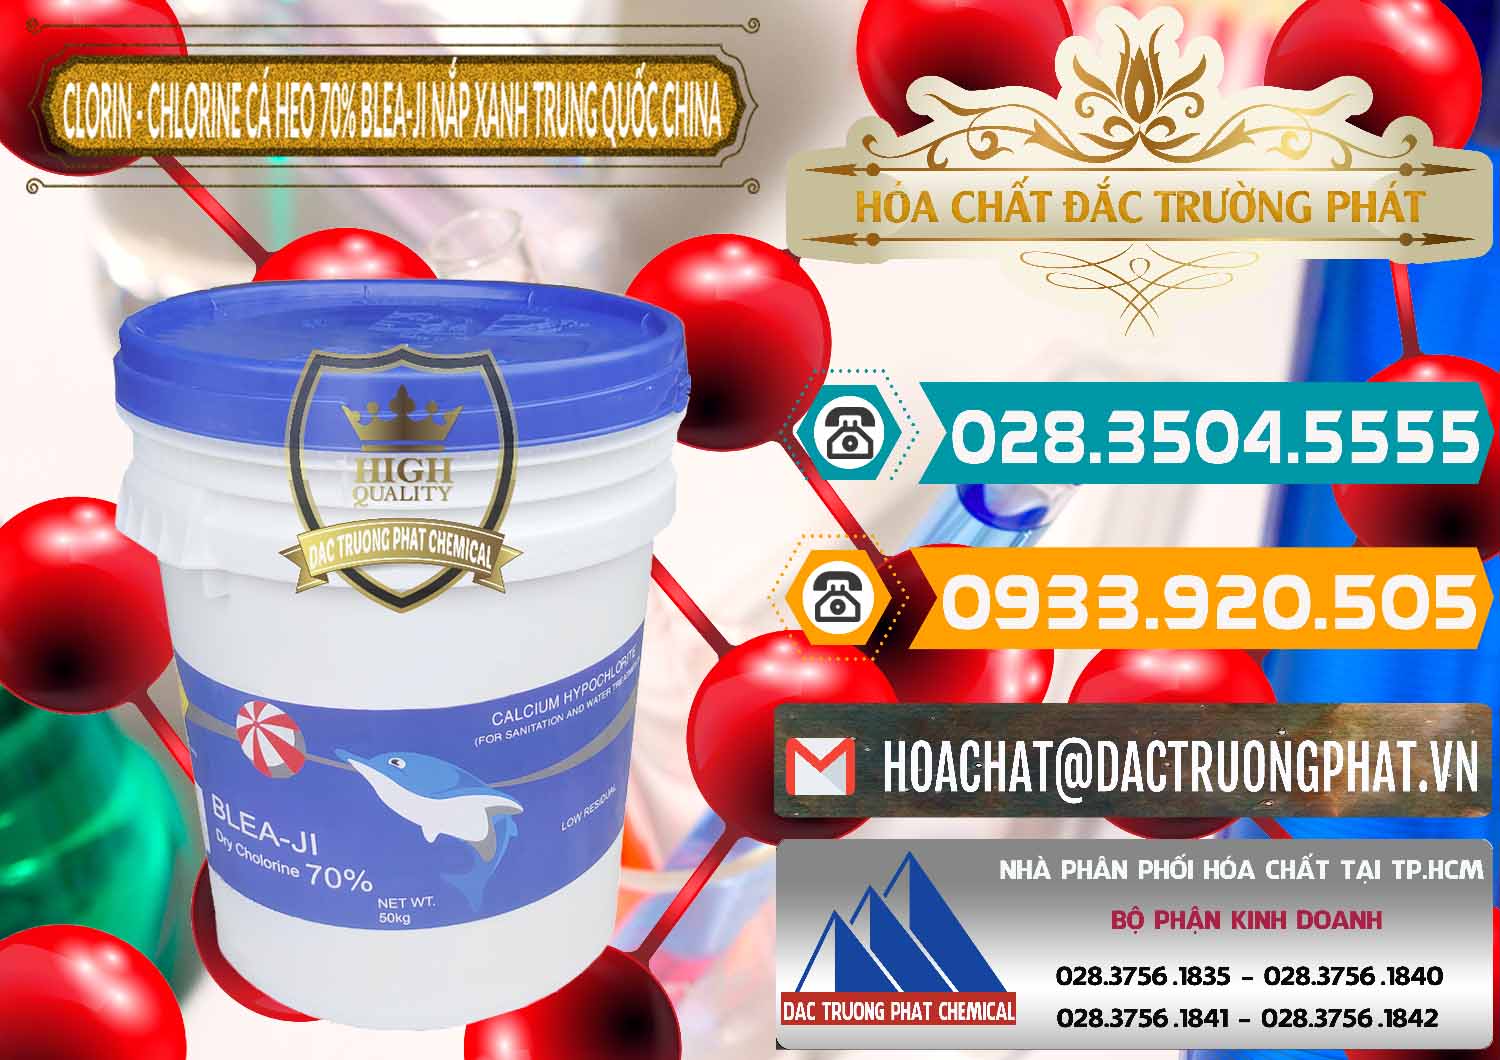 Đơn vị chuyên cung ứng - bán Clorin - Chlorine Cá Heo 70% Cá Heo Blea-Ji Thùng Tròn Nắp Xanh Trung Quốc China - 0208 - Công ty chuyên nhập khẩu & phân phối hóa chất tại TP.HCM - congtyhoachat.vn